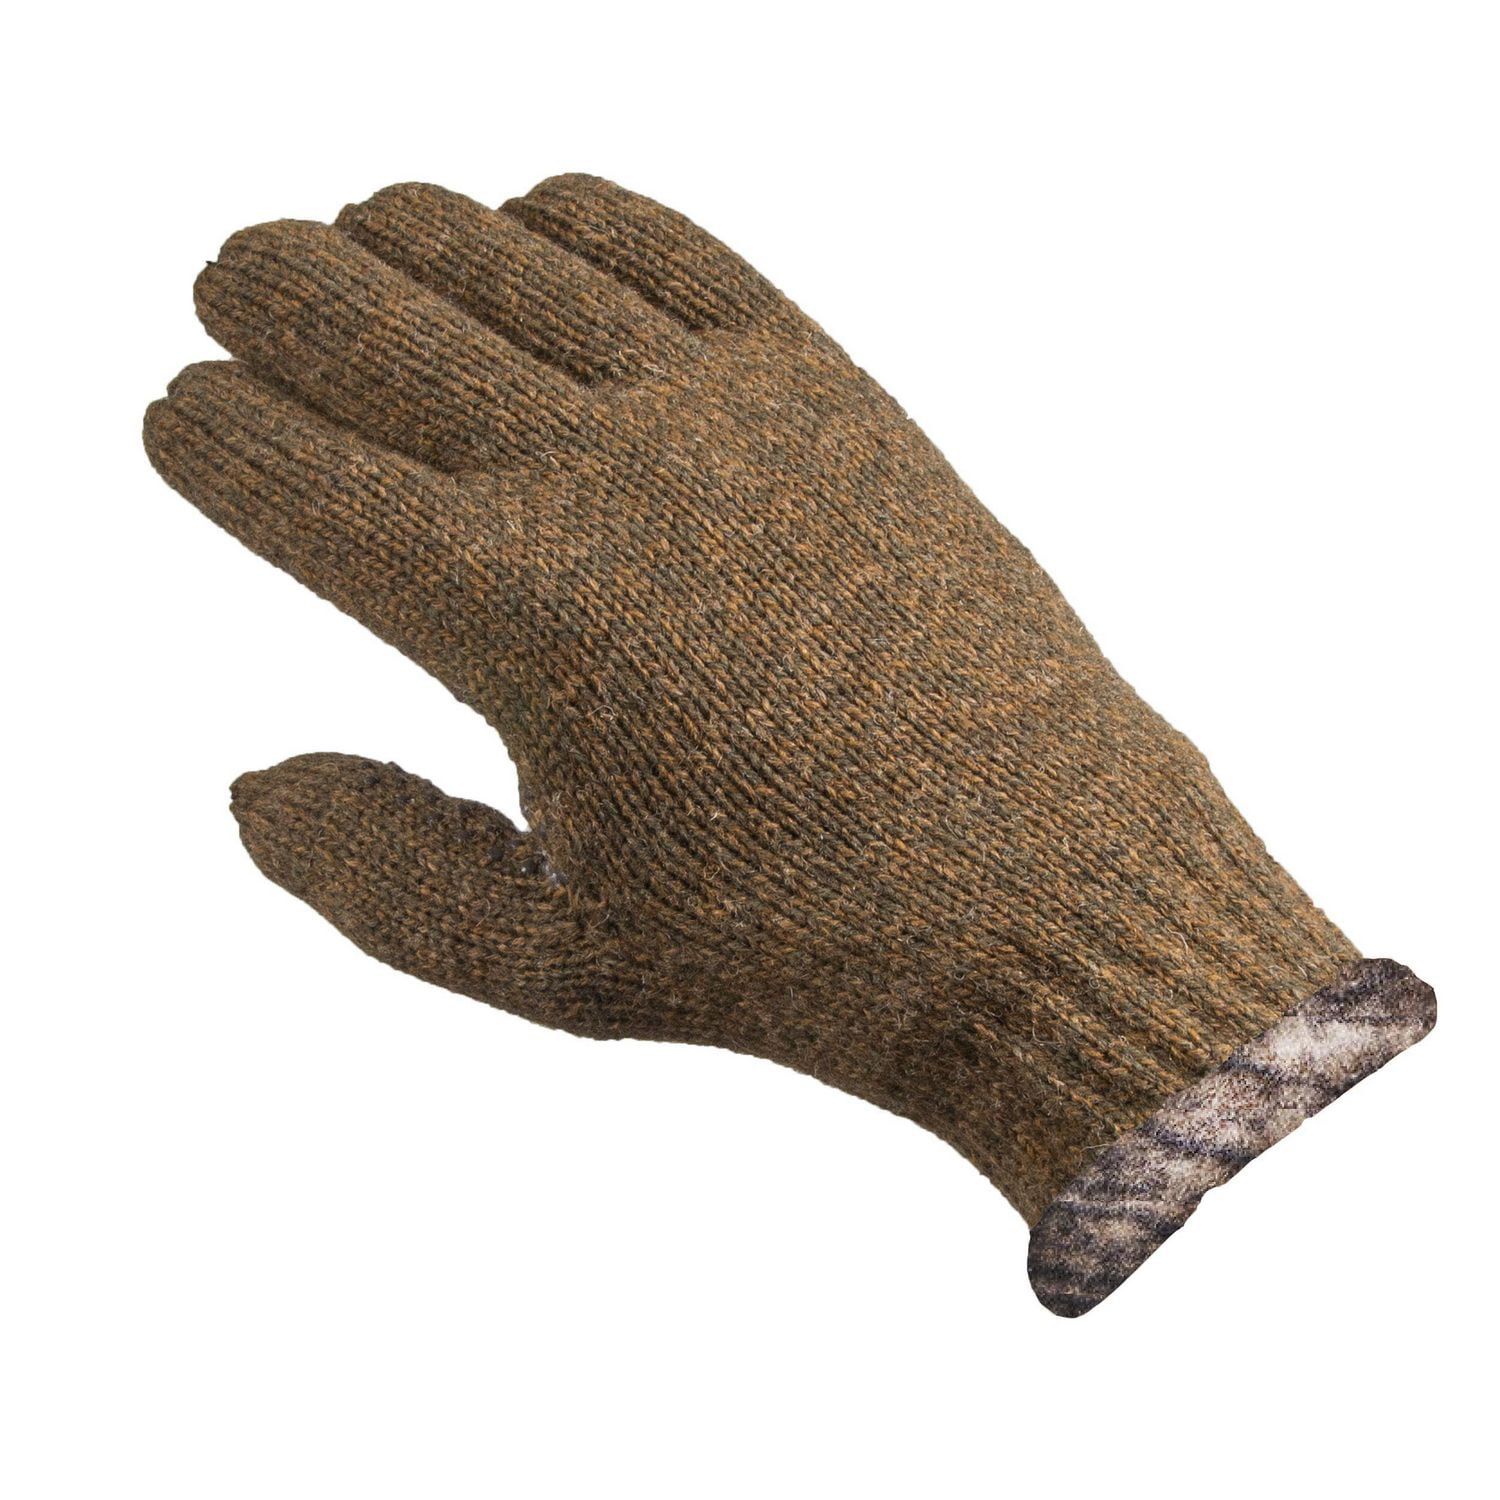 Realtree Edge Men's Ragg-Wool Gloves, Sizes M-L/XL 